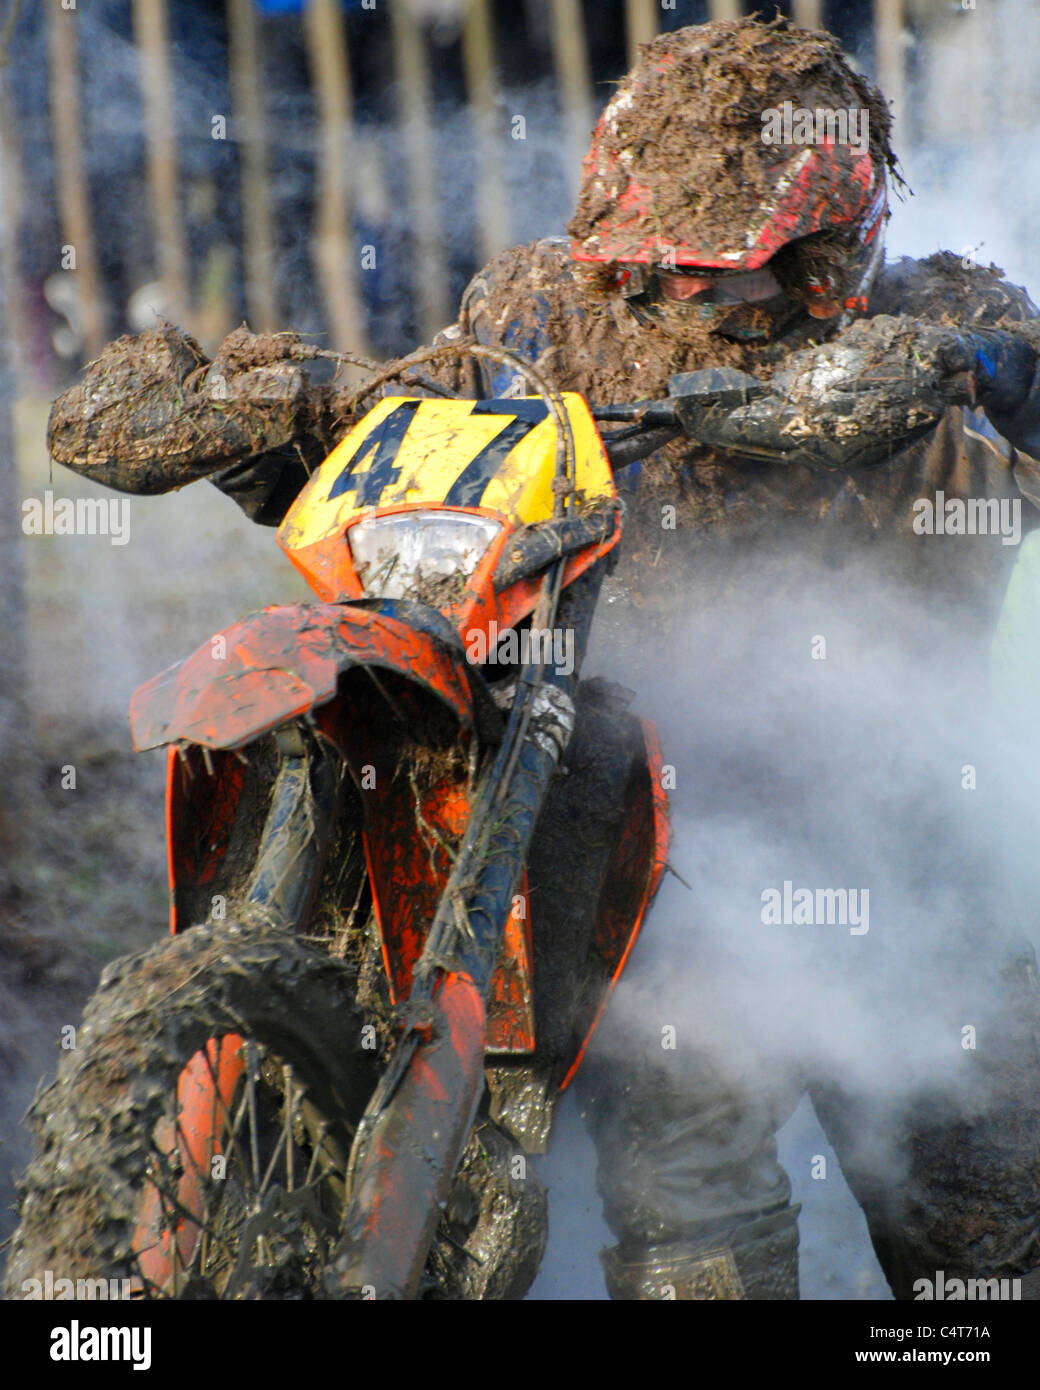 Motor bike rider vélo poussant hors de la boue pendant la course enduro Banque D'Images